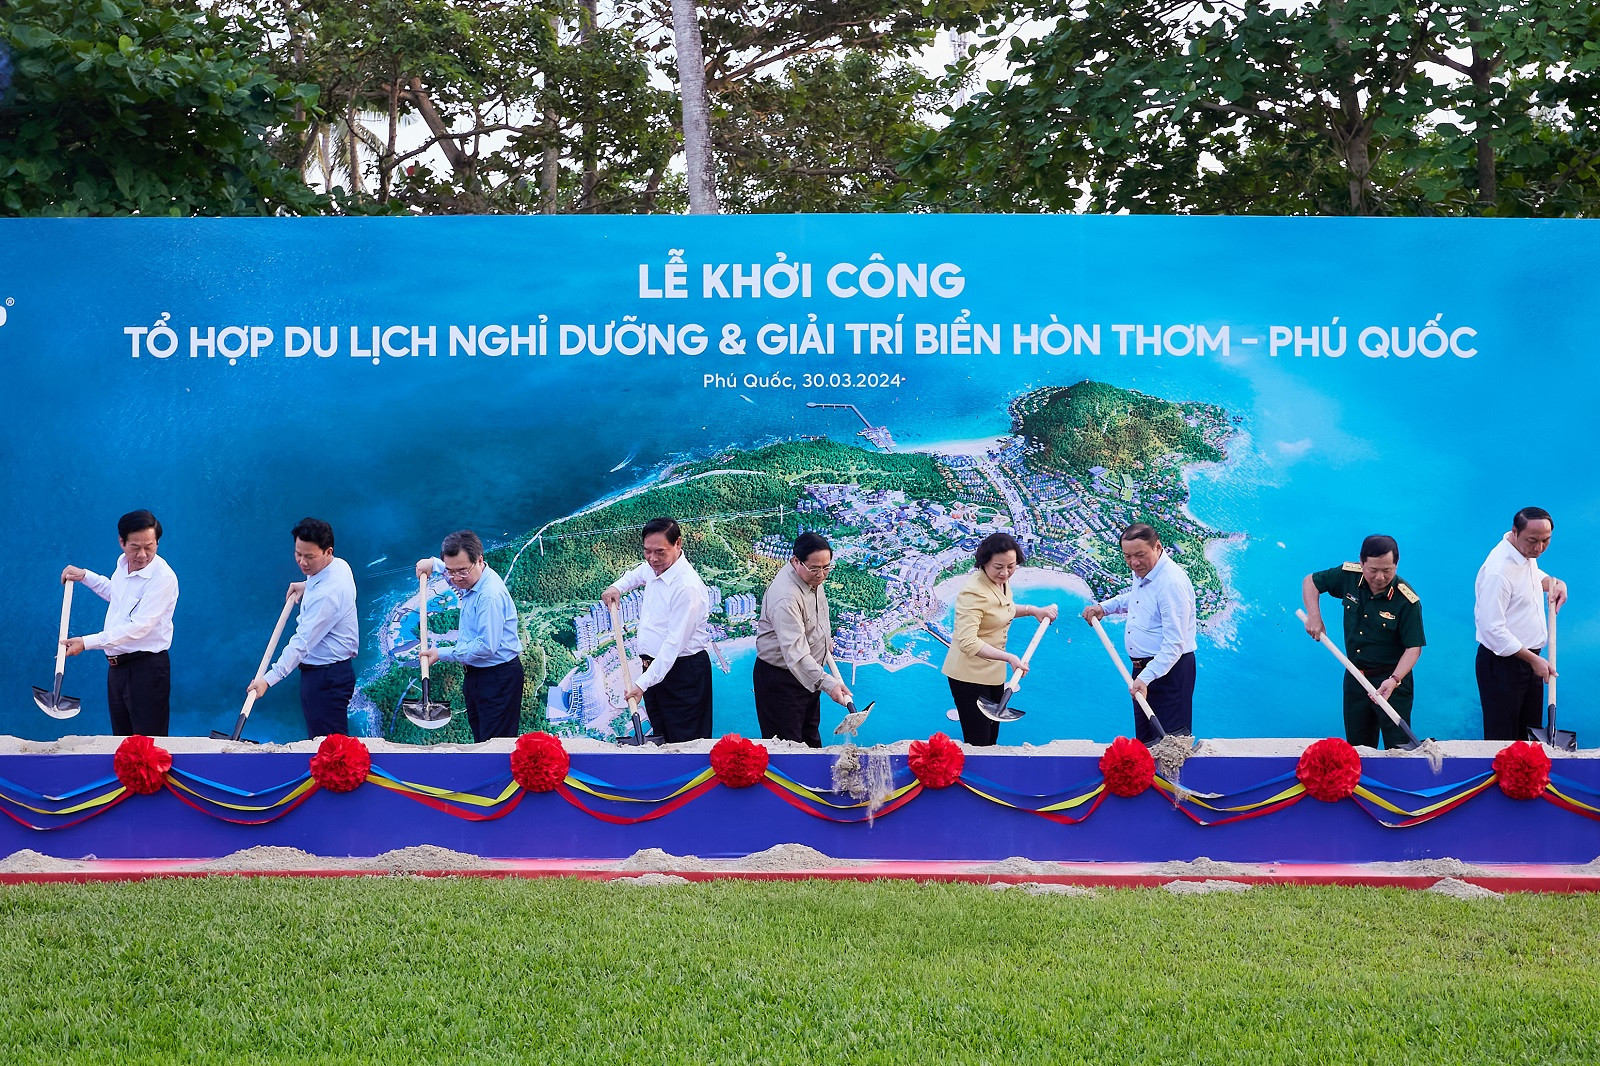 Thủ tướng khởi công tổ hợp du lịch biển Hòn Thơm 50.000 tỷ đồng của Sun Group